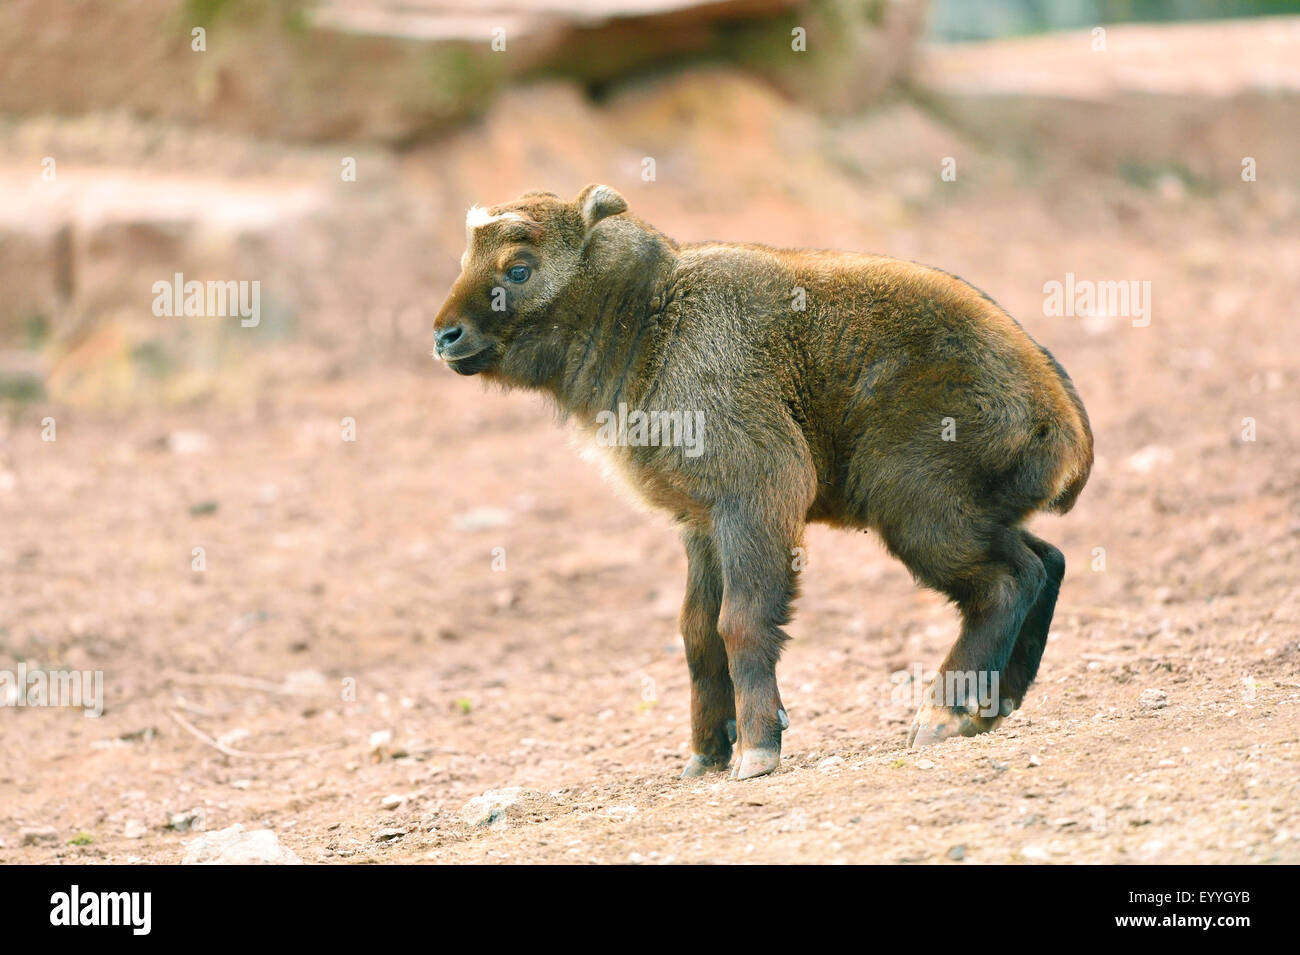 Takin, Cattle chamois, Gnu goat (Budorcas taxicolor, Budorcas taxicolor taxicolor), cub Stock Photo